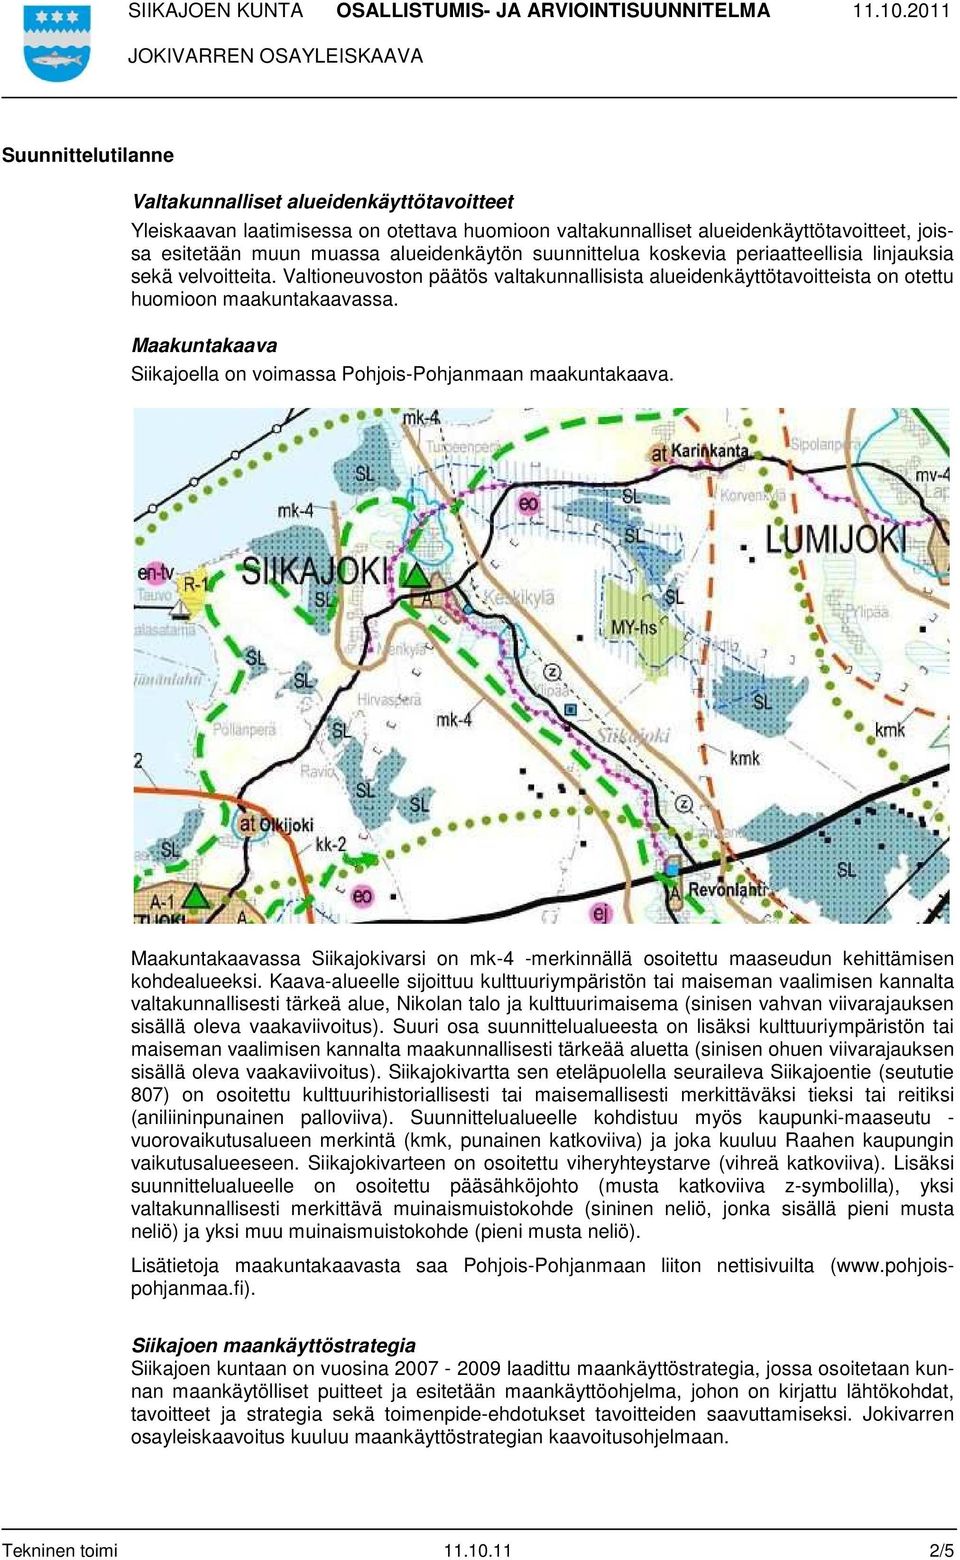 Maakuntakaava Siikajoella on voimassa Pohjois-Pohjanmaan maakuntakaava. Maakuntakaavassa Siikajokivarsi on mk-4 -merkinnällä osoitettu maaseudun kehittämisen kohdealueeksi.